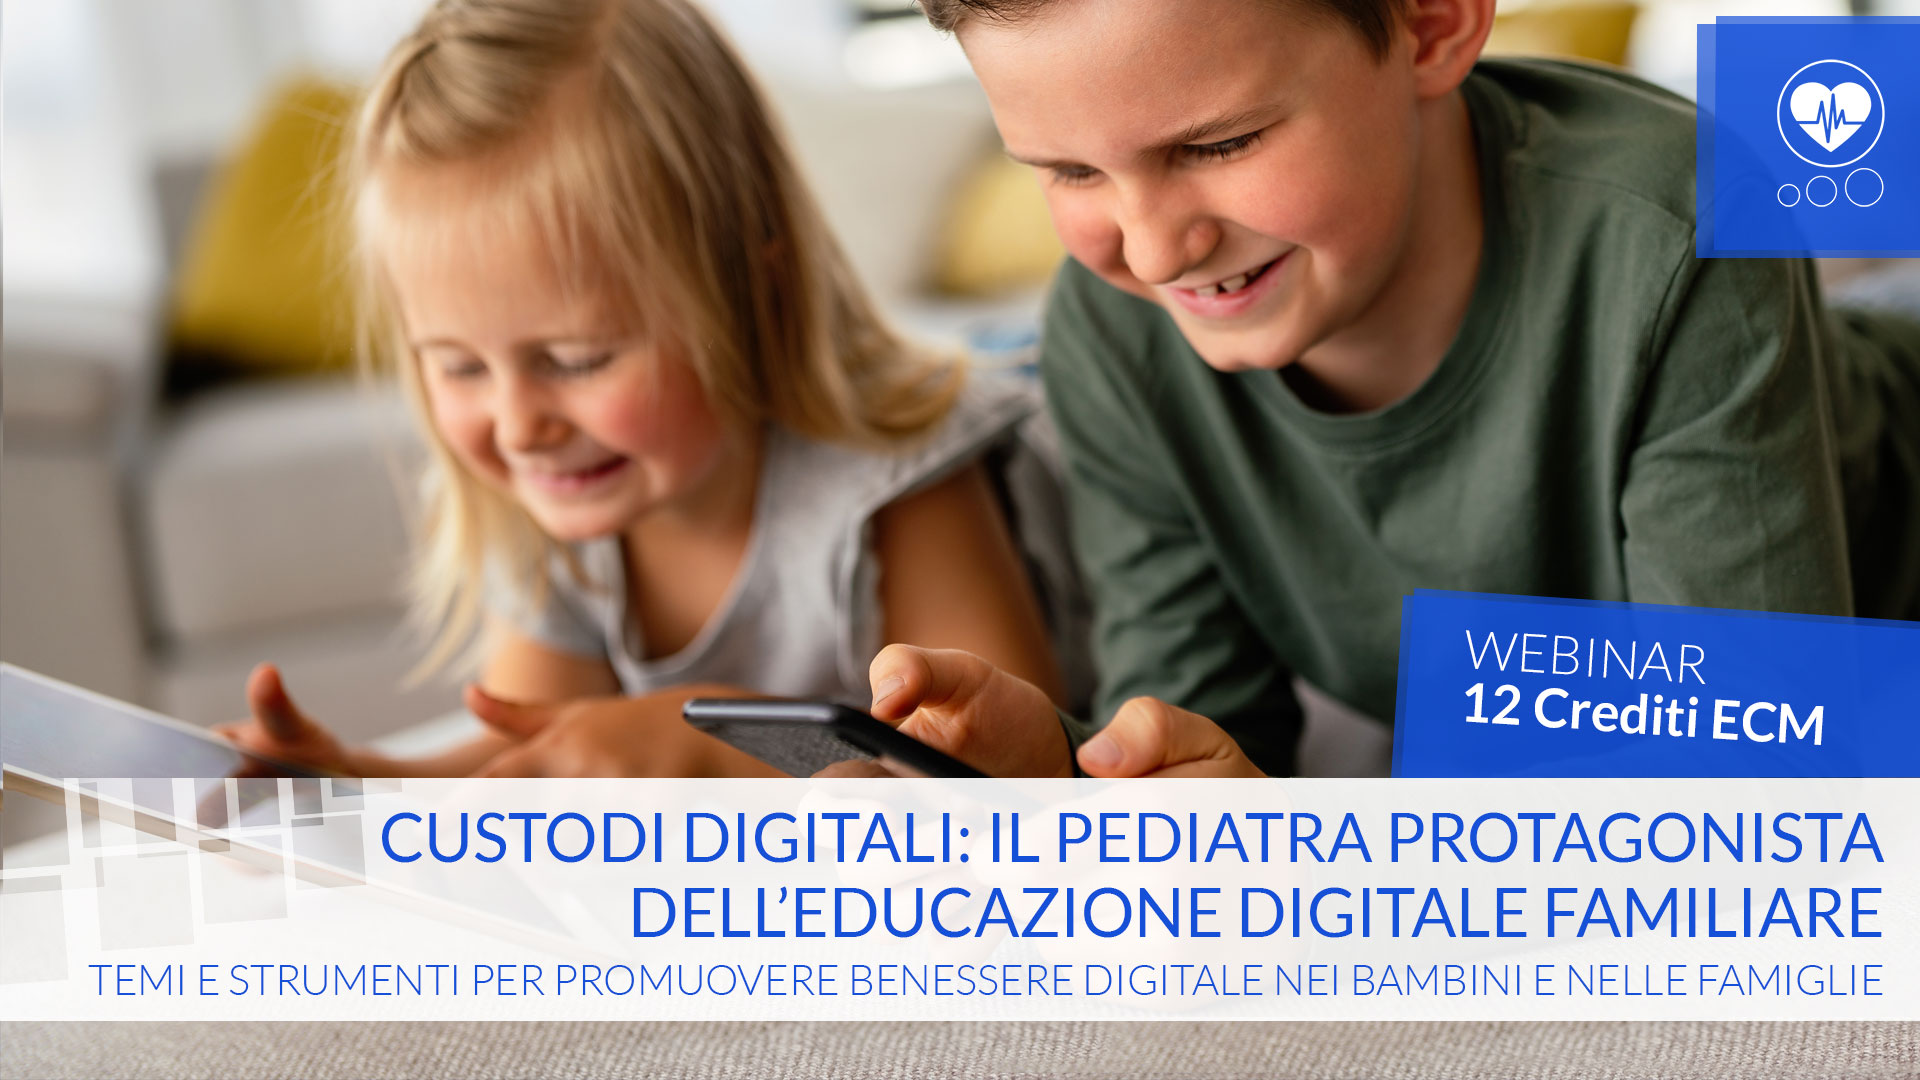 Custodi digitali: il pediatra protagonista dell'educazione digitale familiare